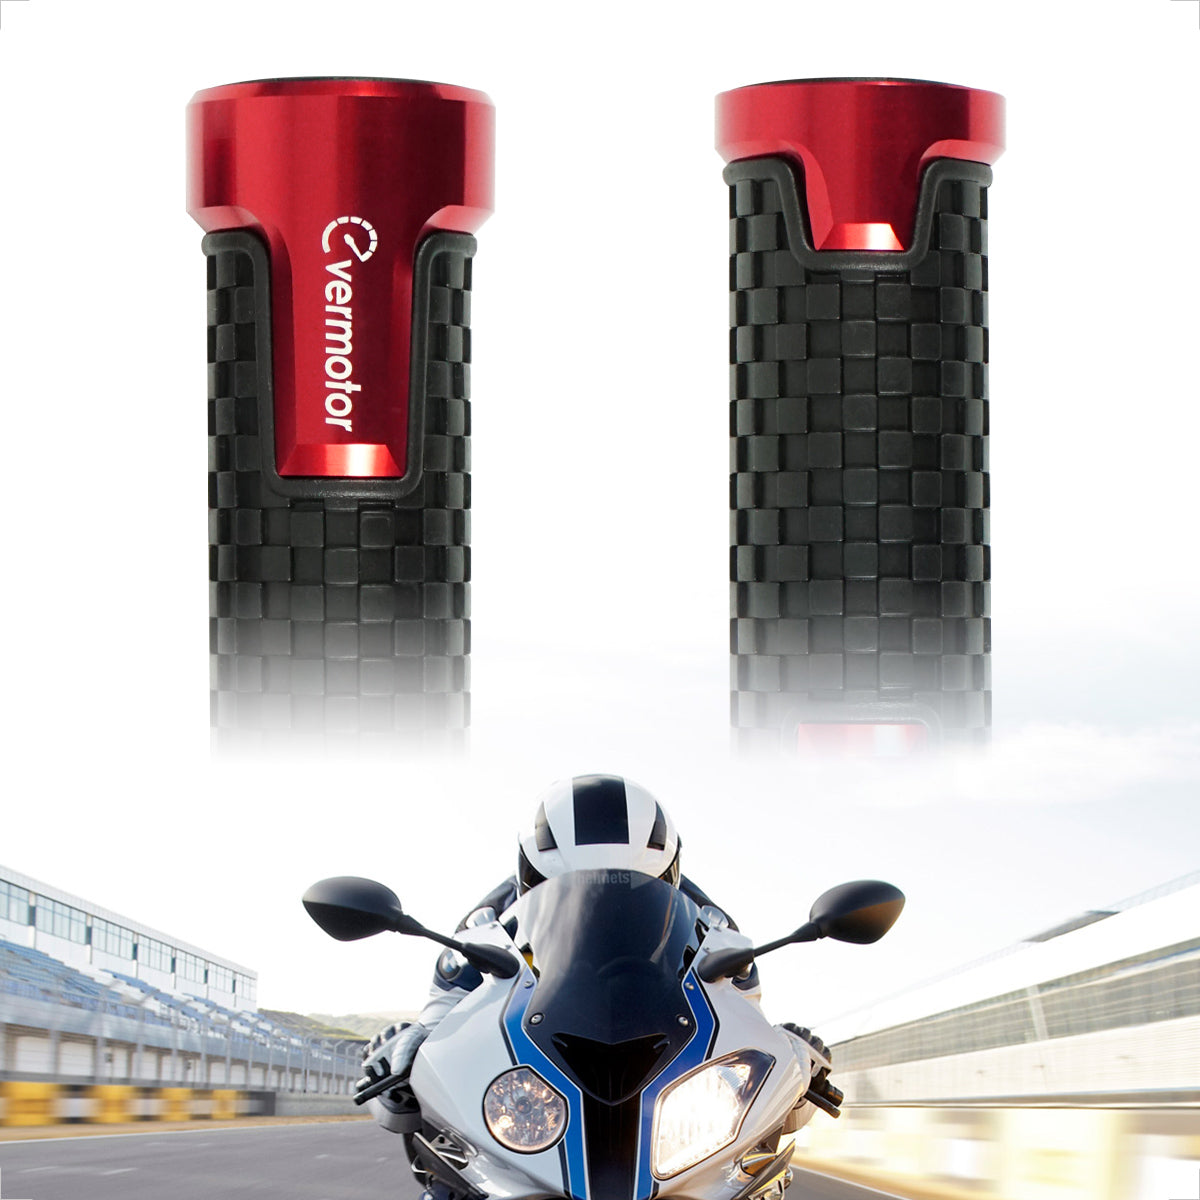 Evermotor Motorrad Lenkergriffe - Hochwertige Anti-Rutsch Griffe für mehr  Sicherheit.